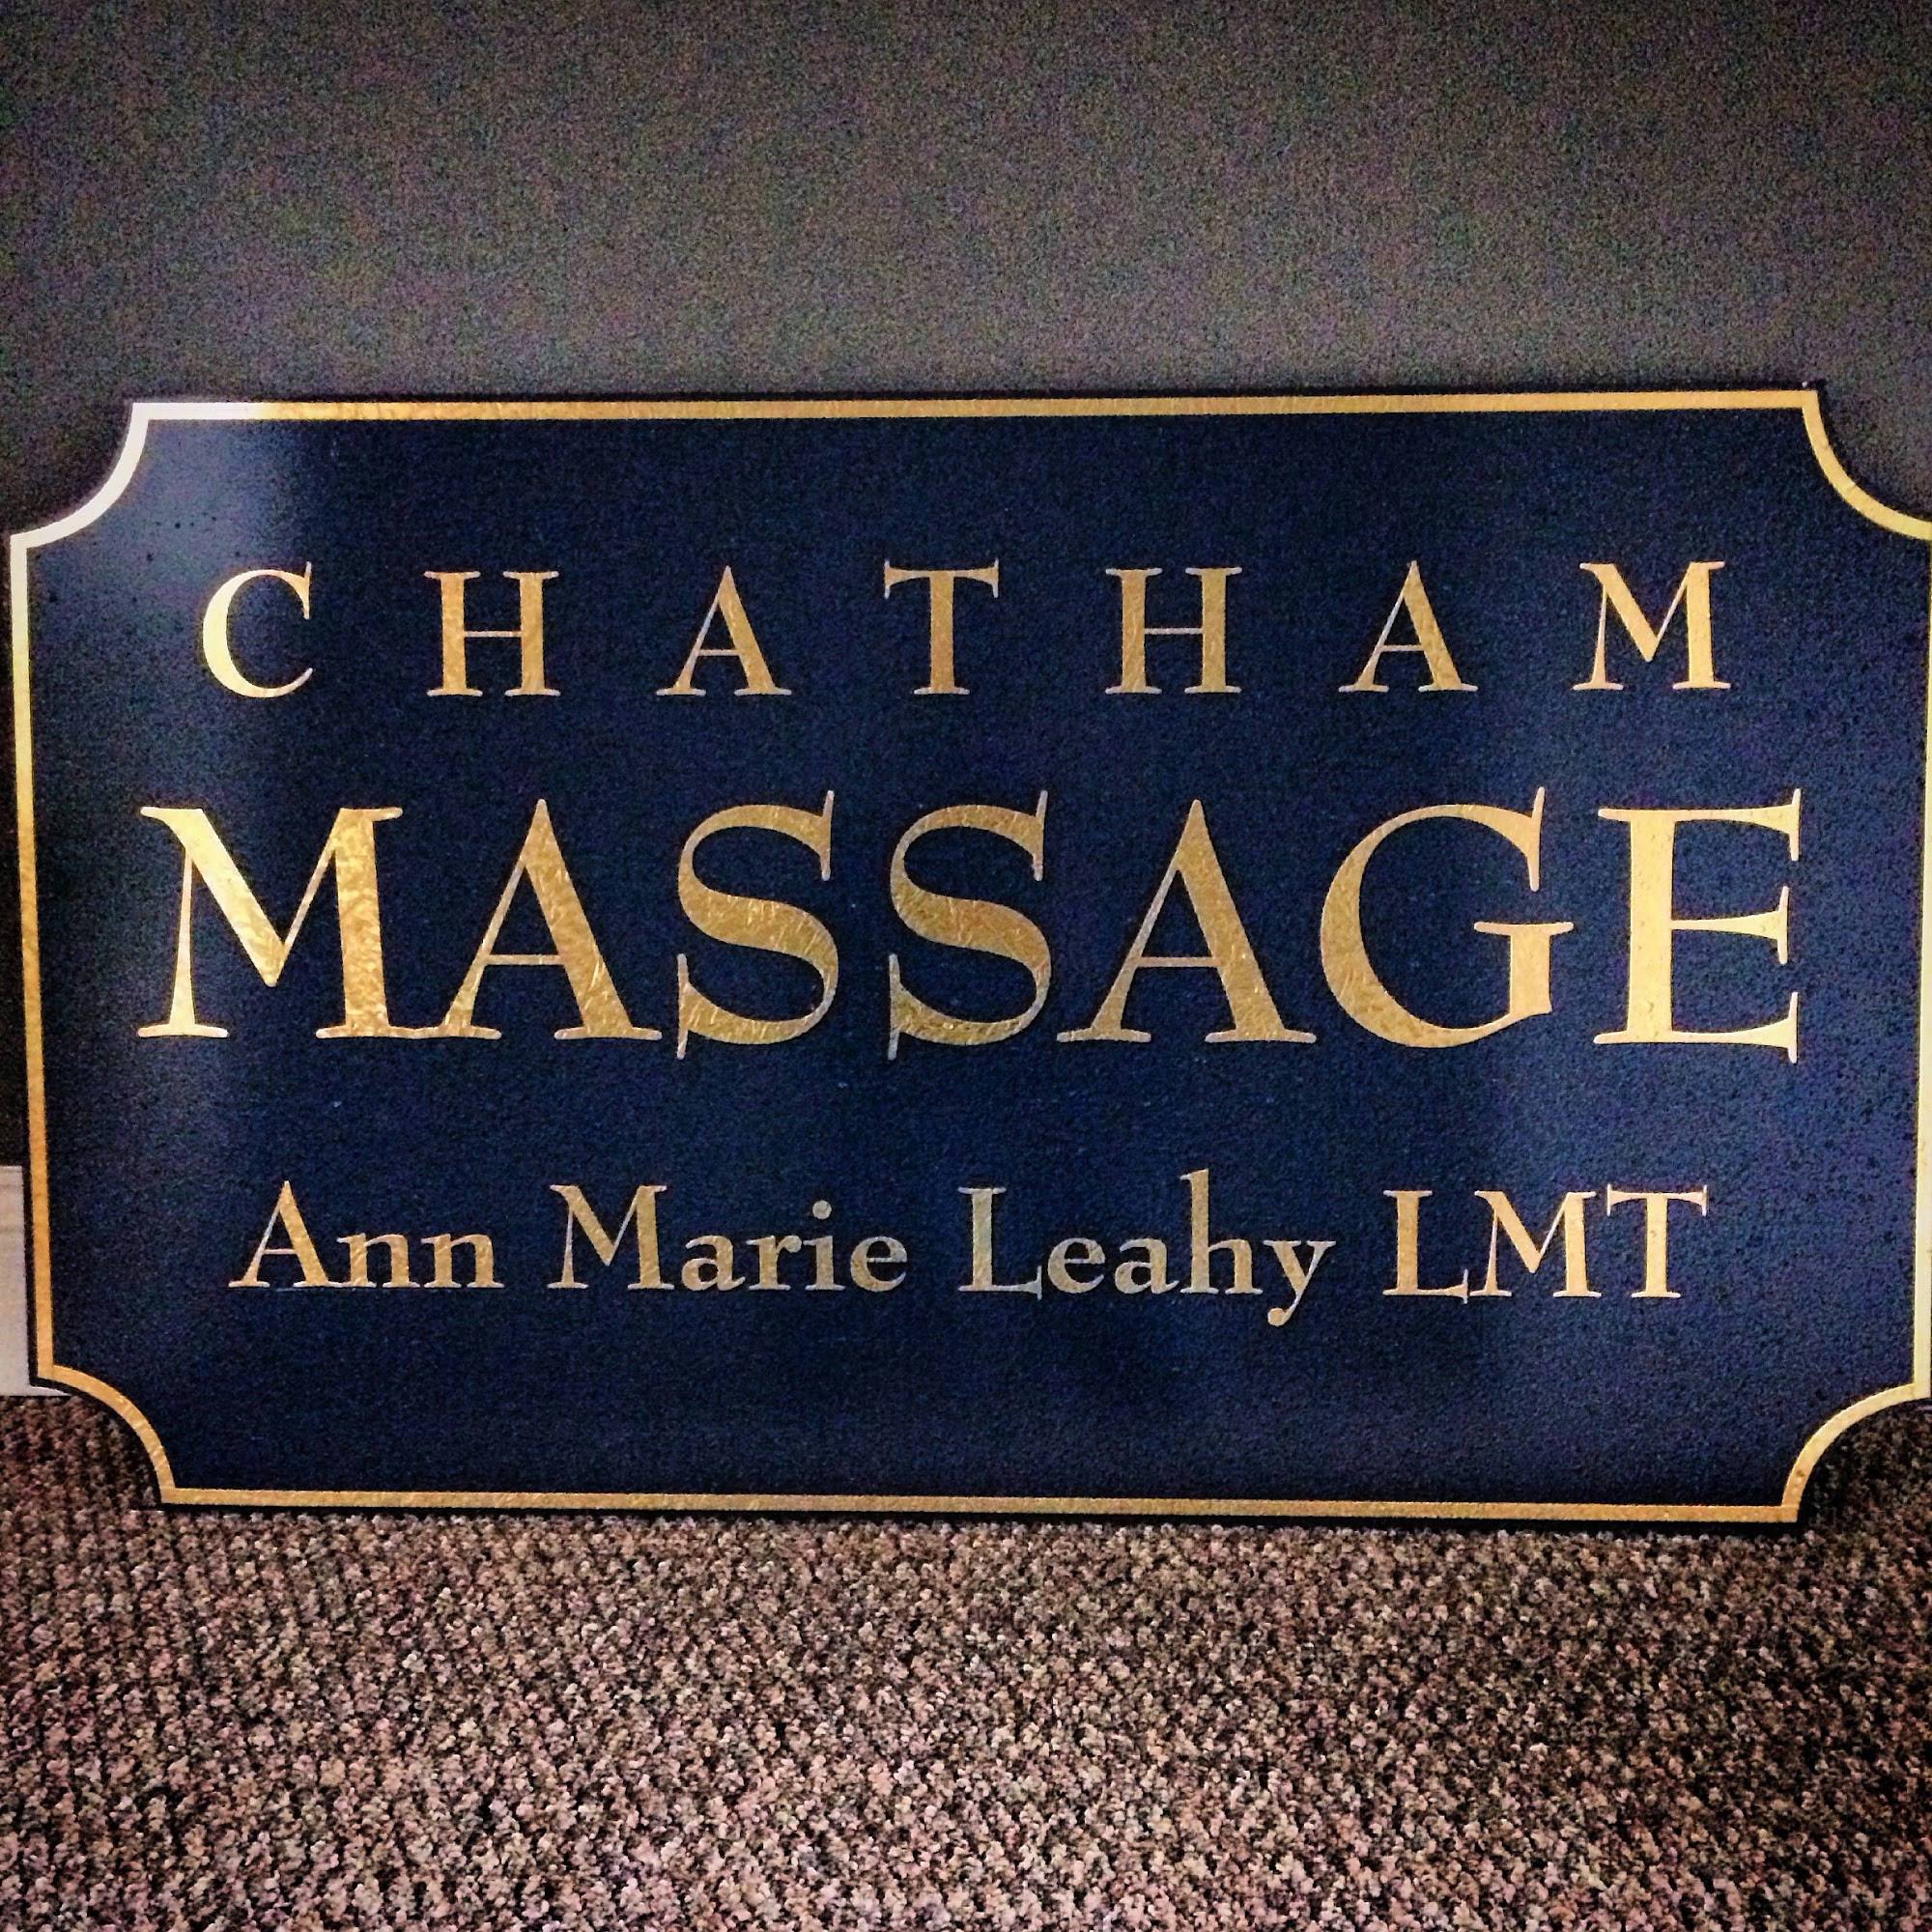 Chatham Massage Ann Marie Leahy LMT